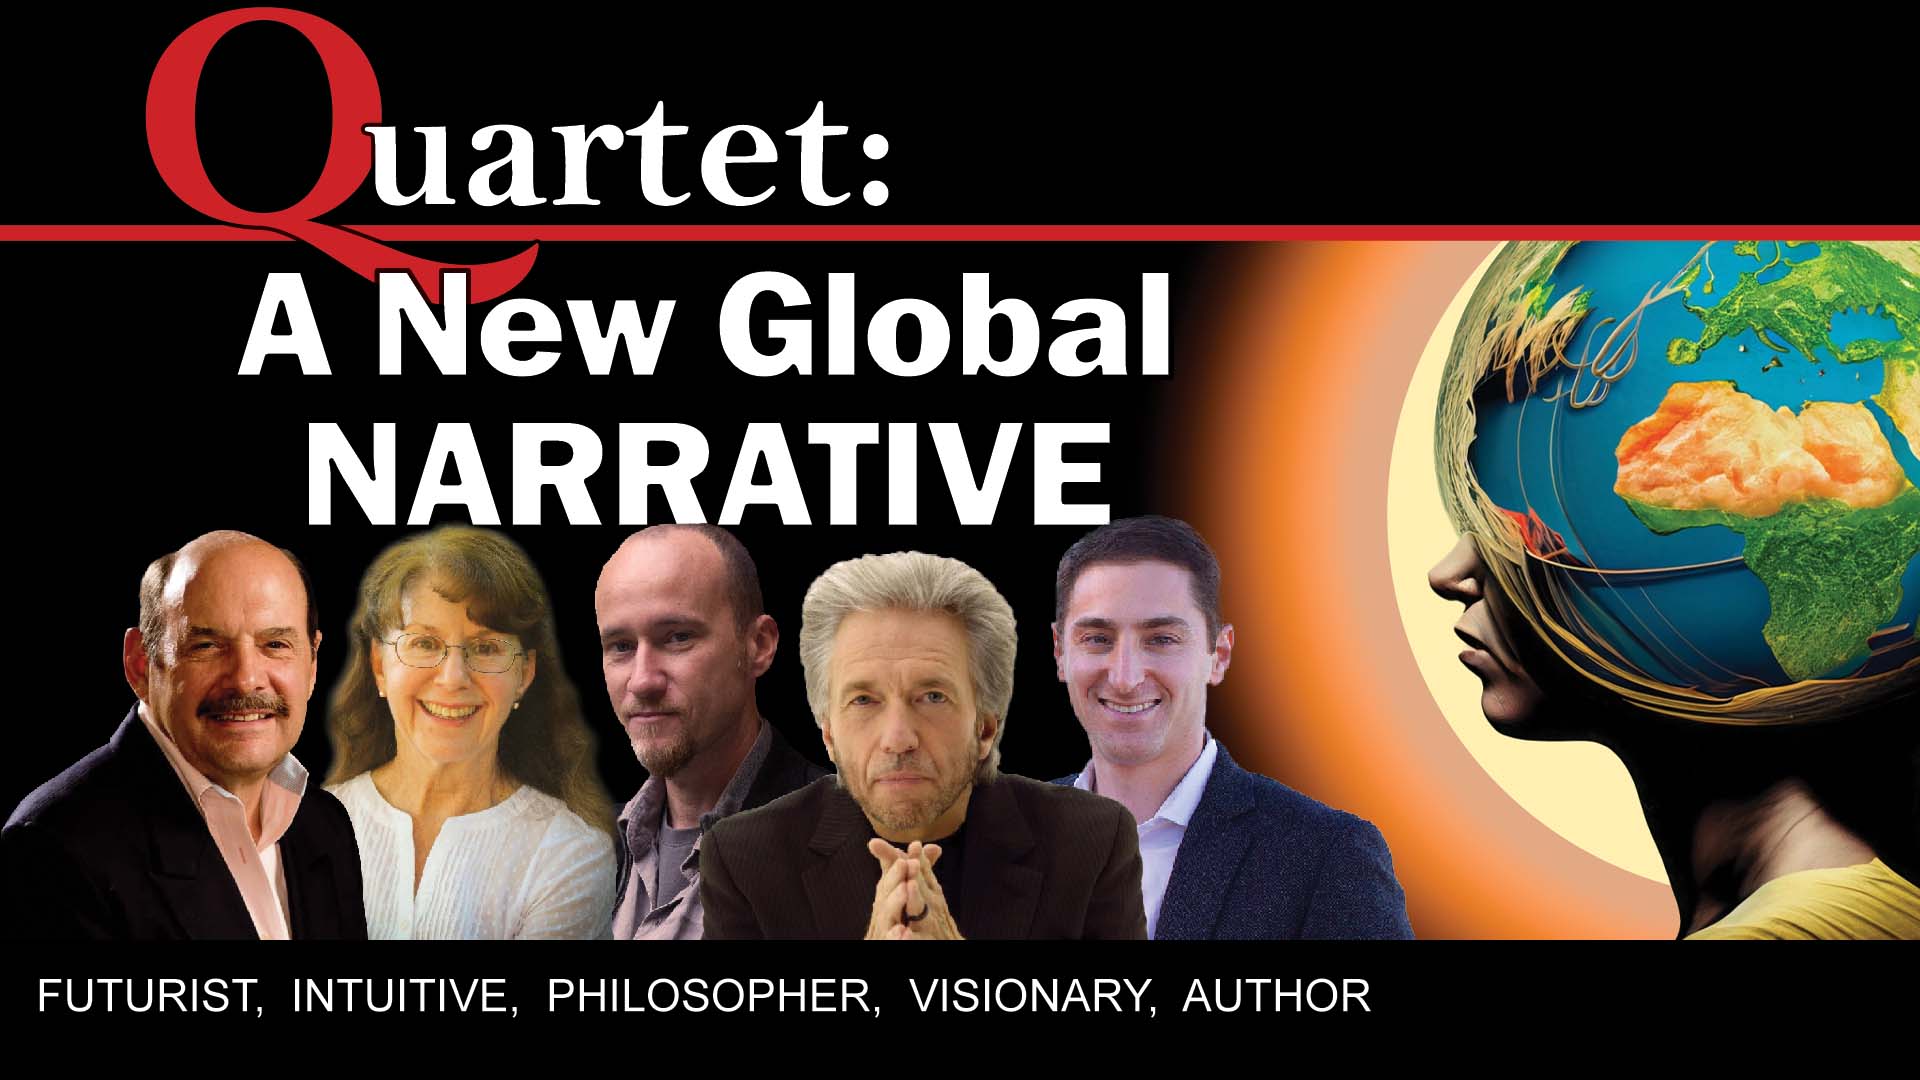 Quartet, A New Global Narrative